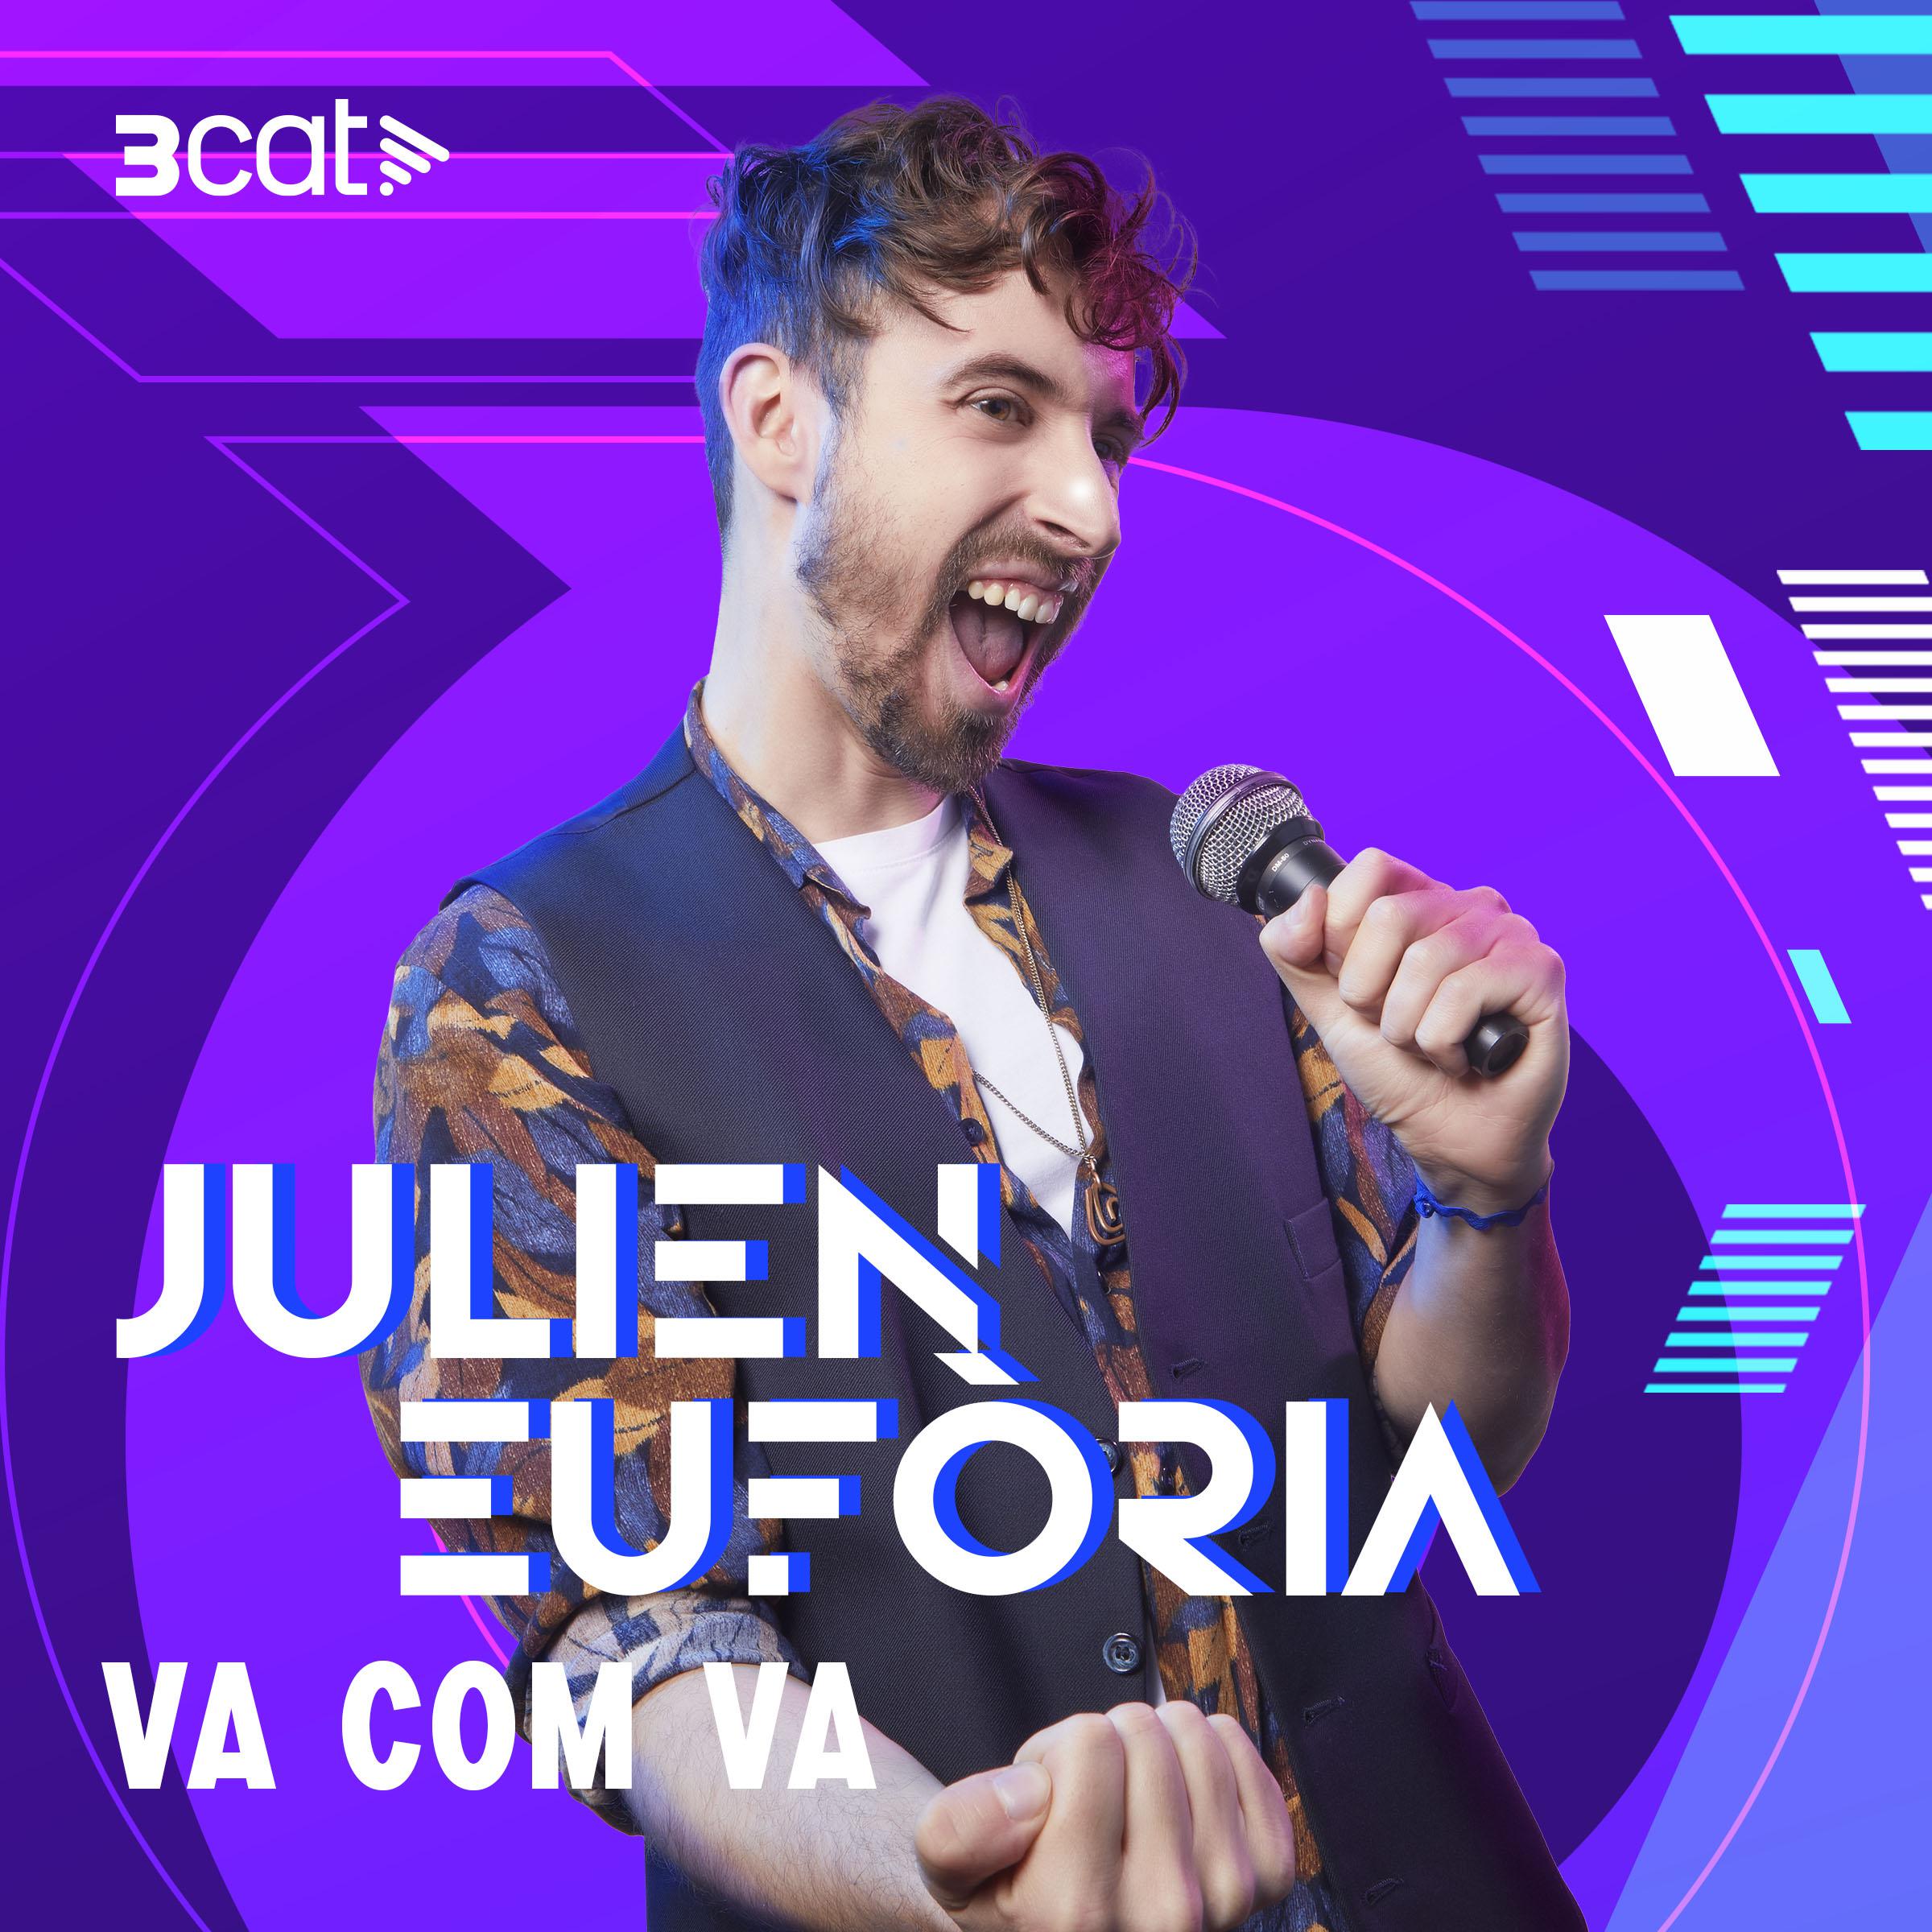 Julien Eufòria - Va com va (En Directe 3Cat)